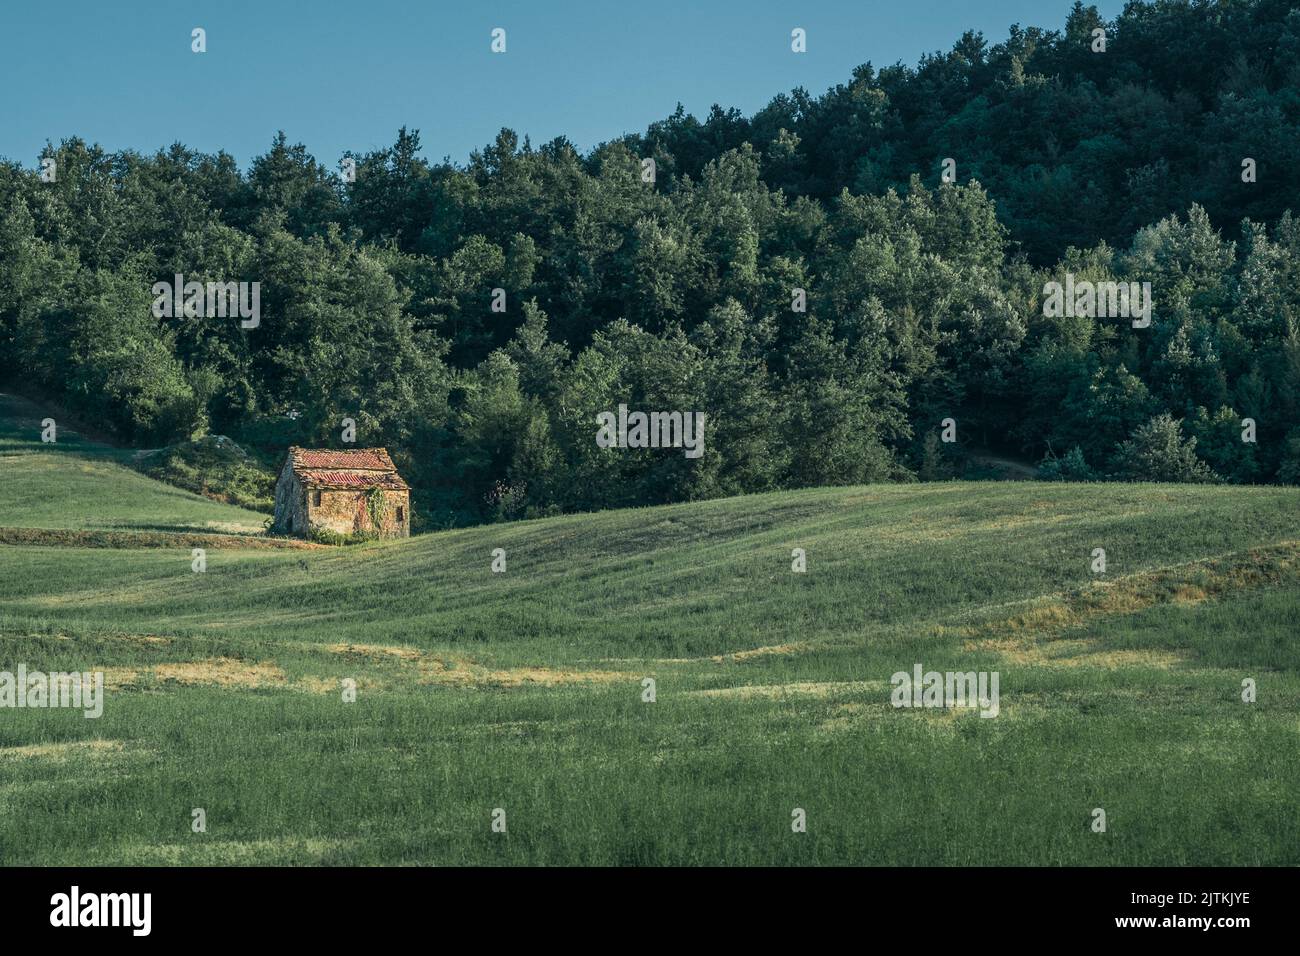 Ancienne maison rurale abandonnée et endommagée au bord du bois. Monghidoro, province de Bologne, Émilie-Romagne, Italie Banque D'Images